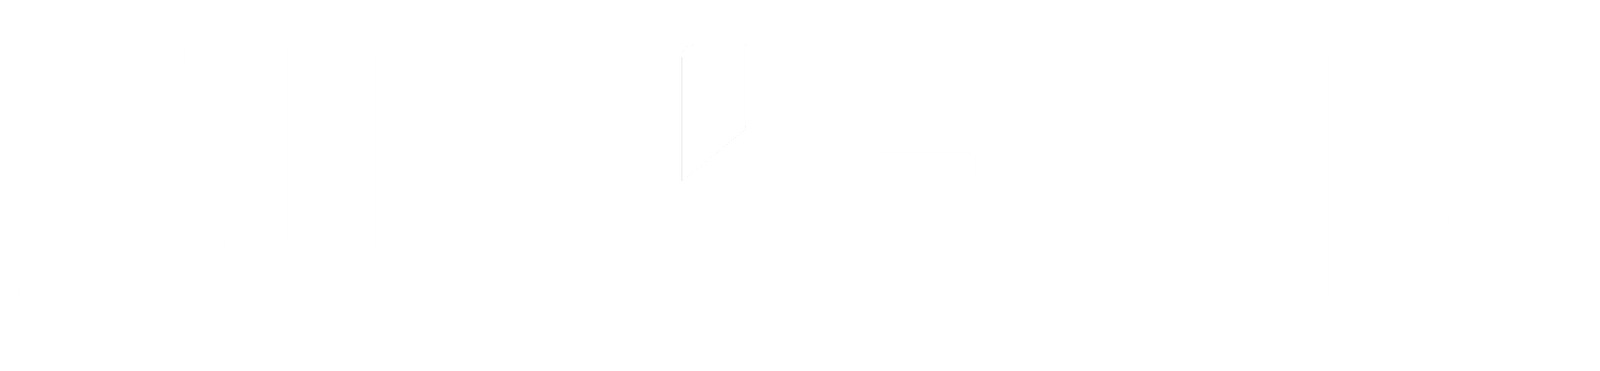 Fujifilm-logo